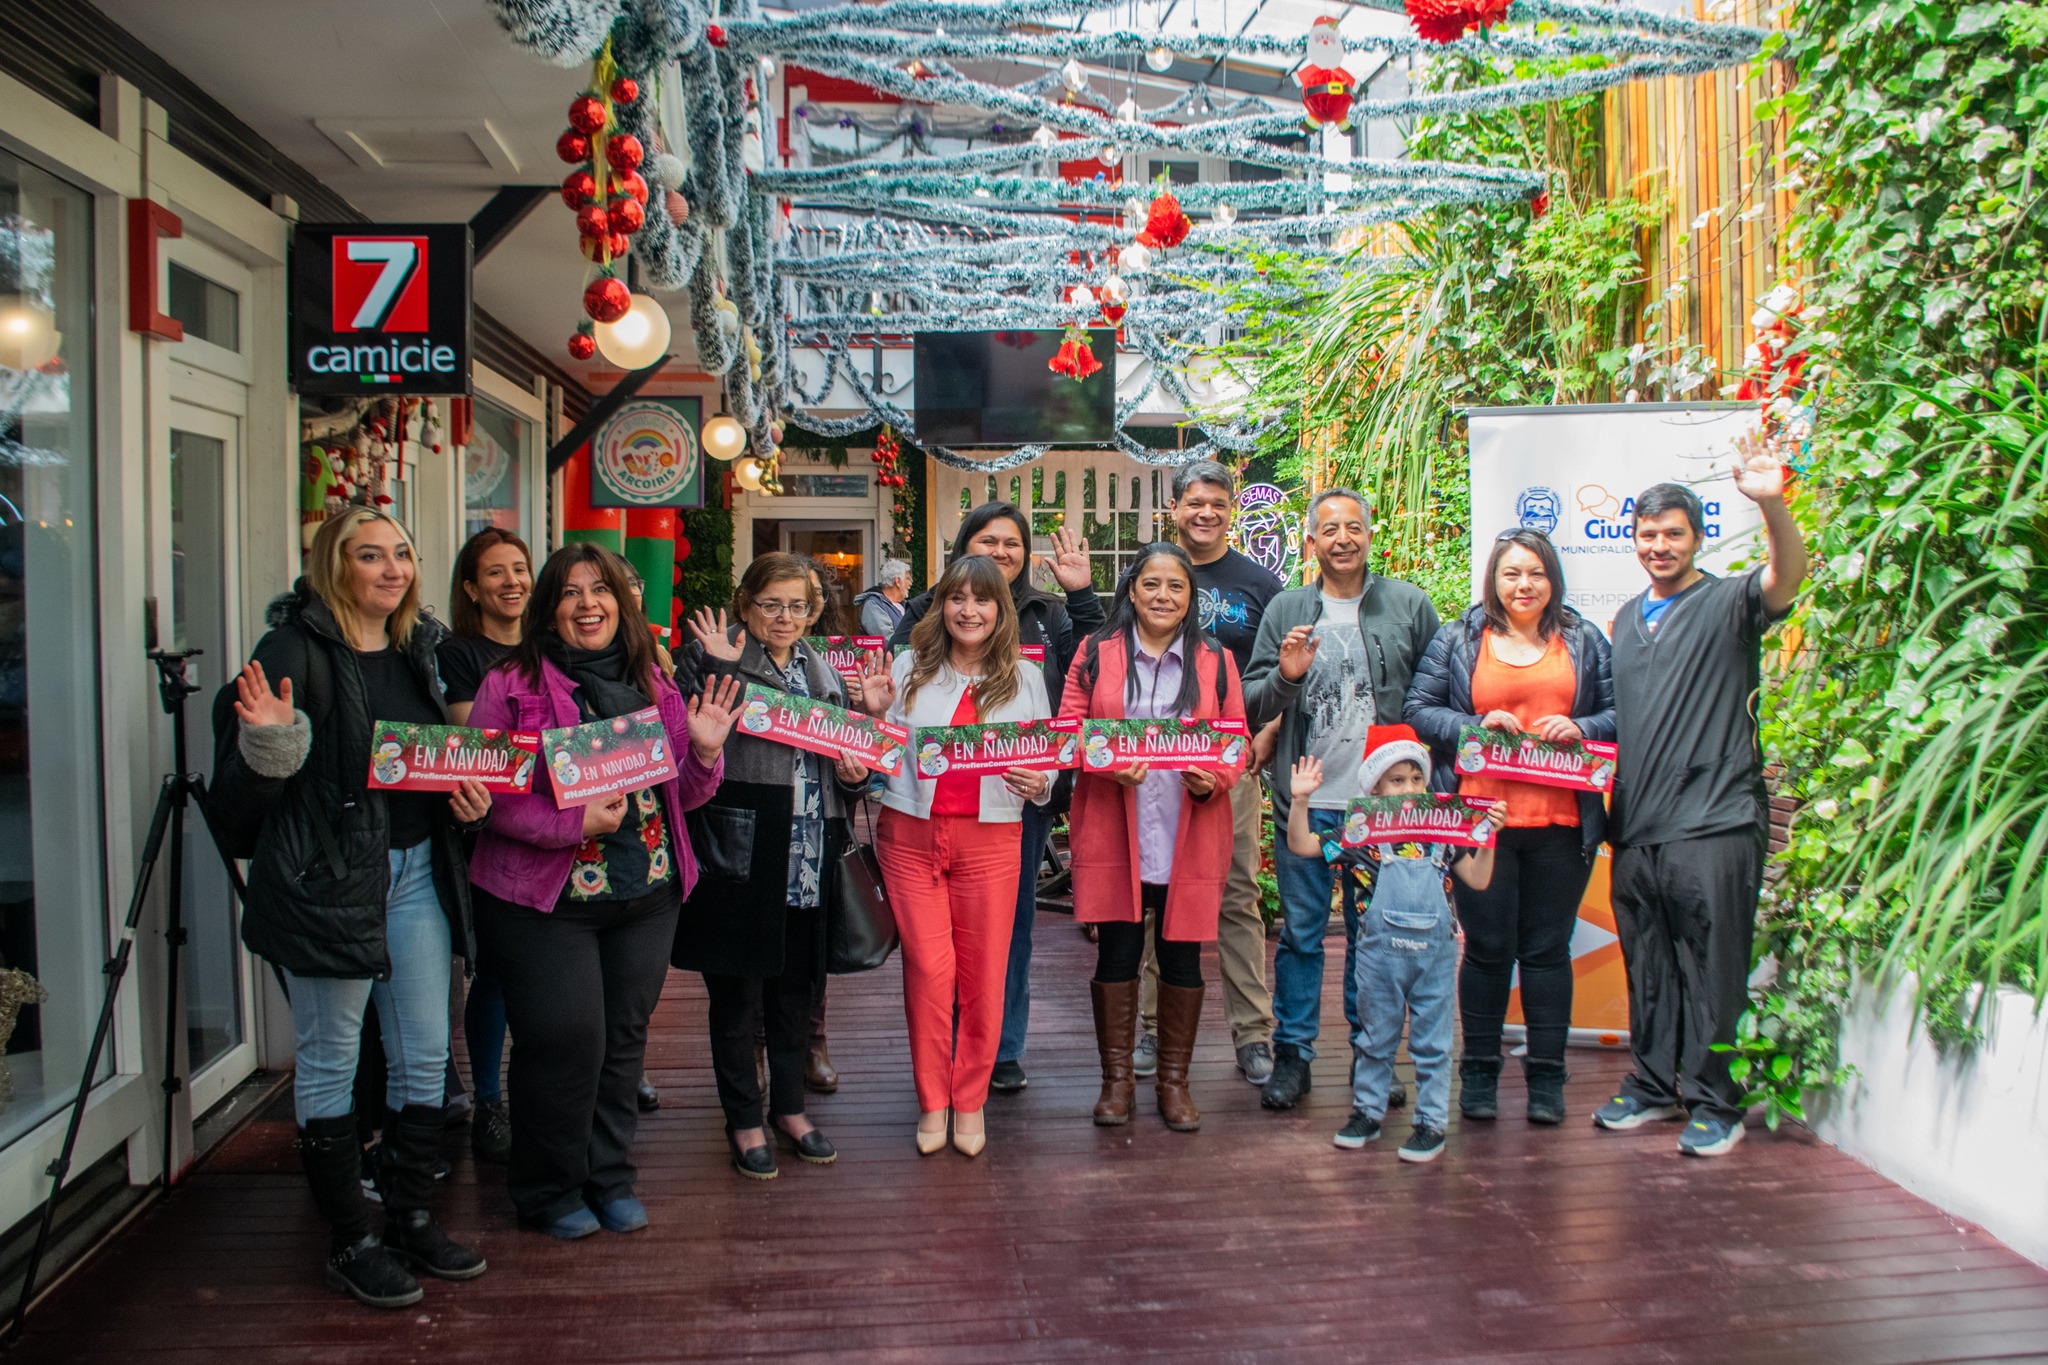 Municipio Ciudadano lanzó campaña “Prefiera Comercio Natalino” en apoyo a los emprendedores locales en fiestas de fin de año